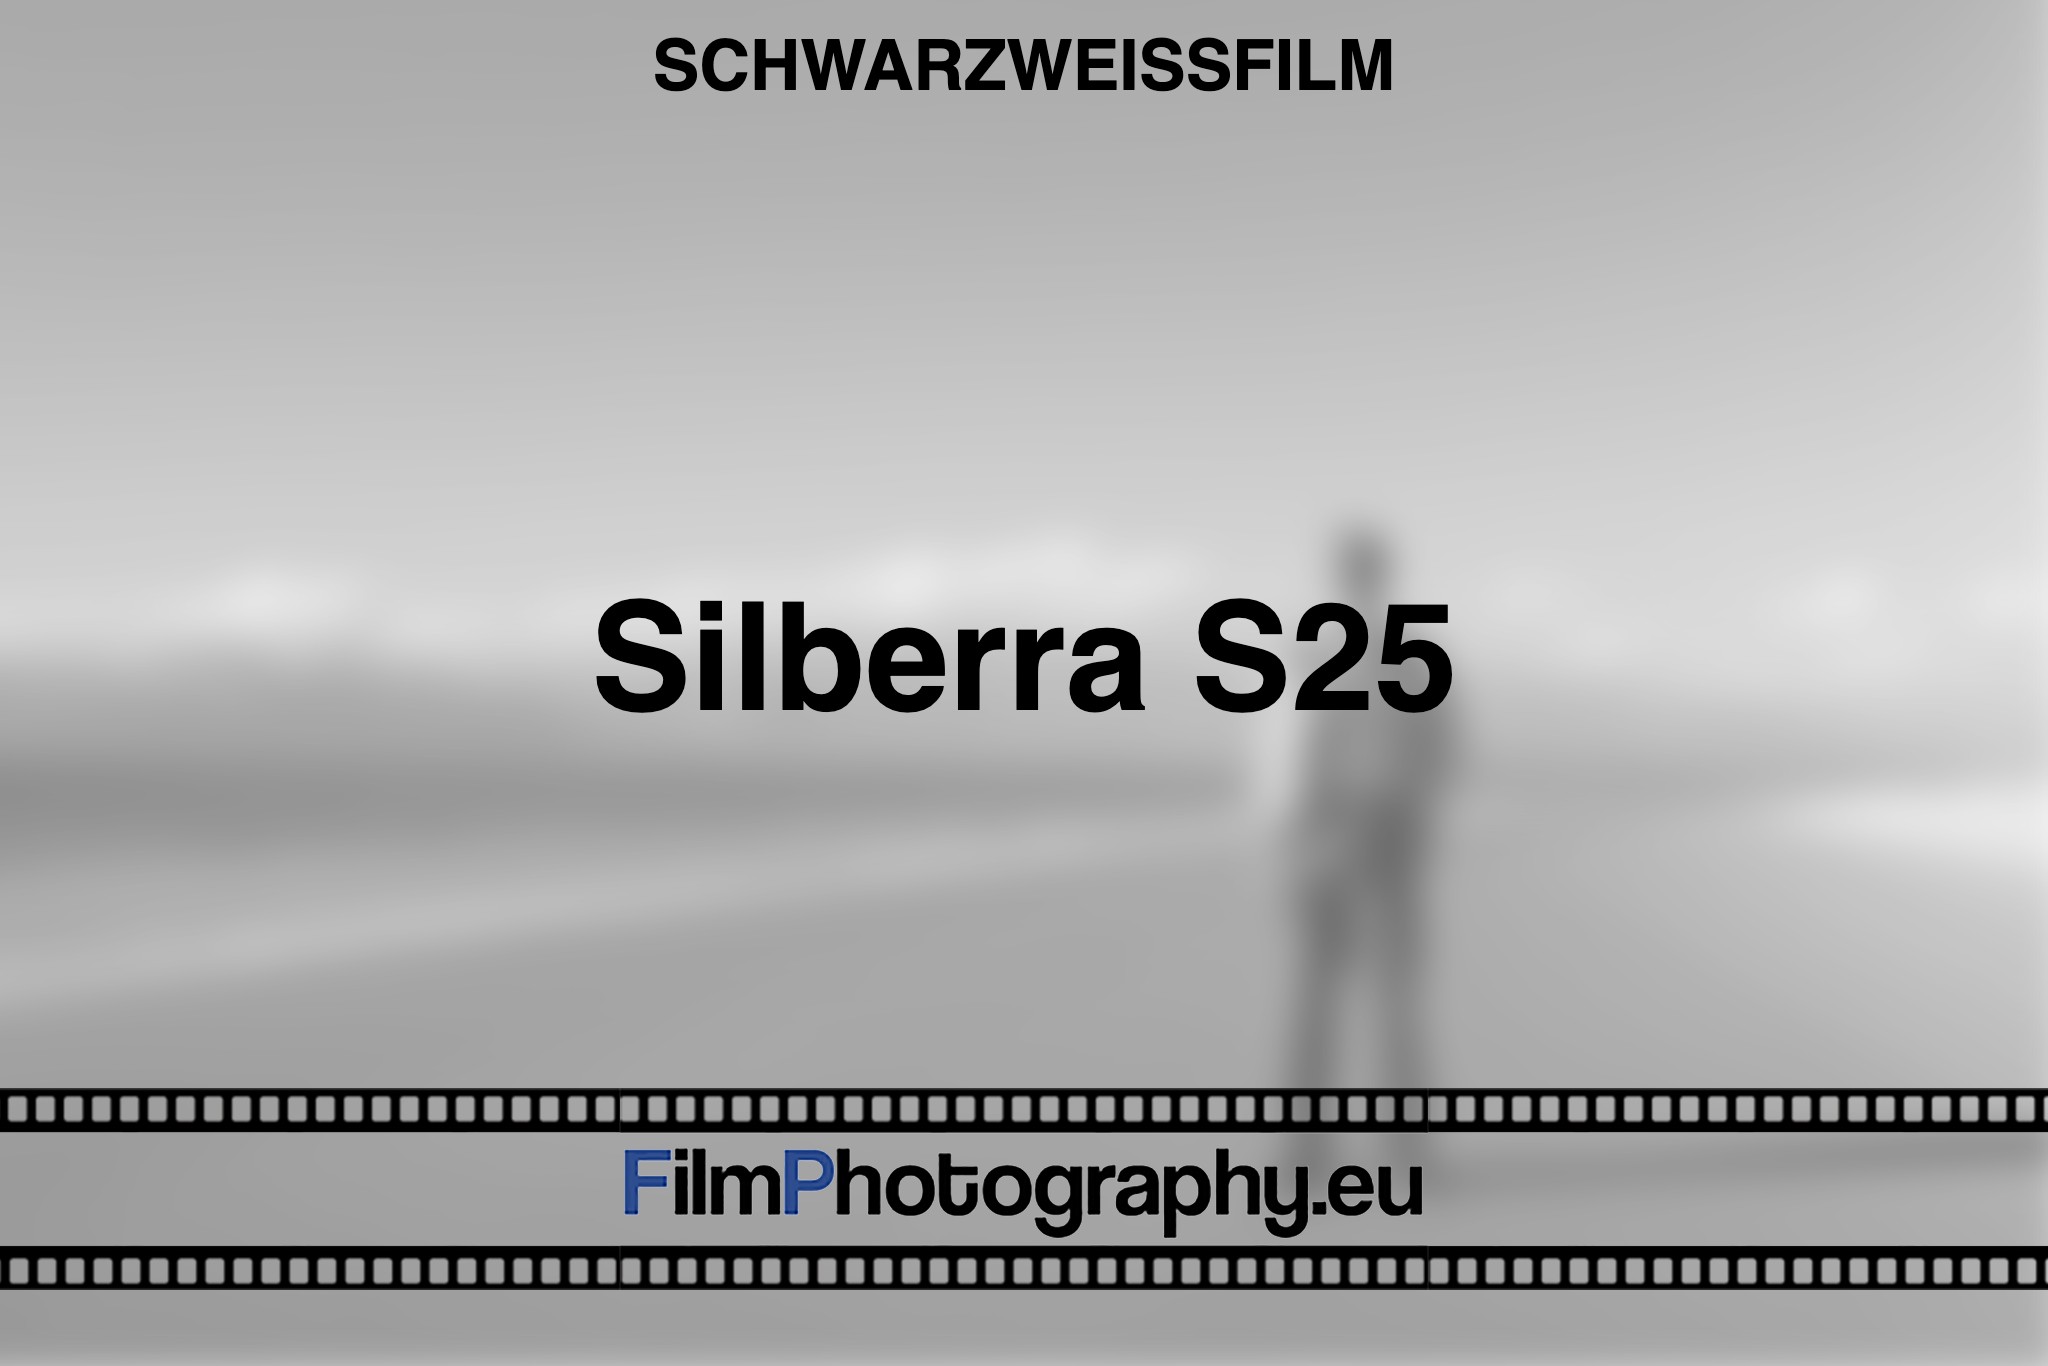 silberra-s25-schwarzweißfilm-bnv